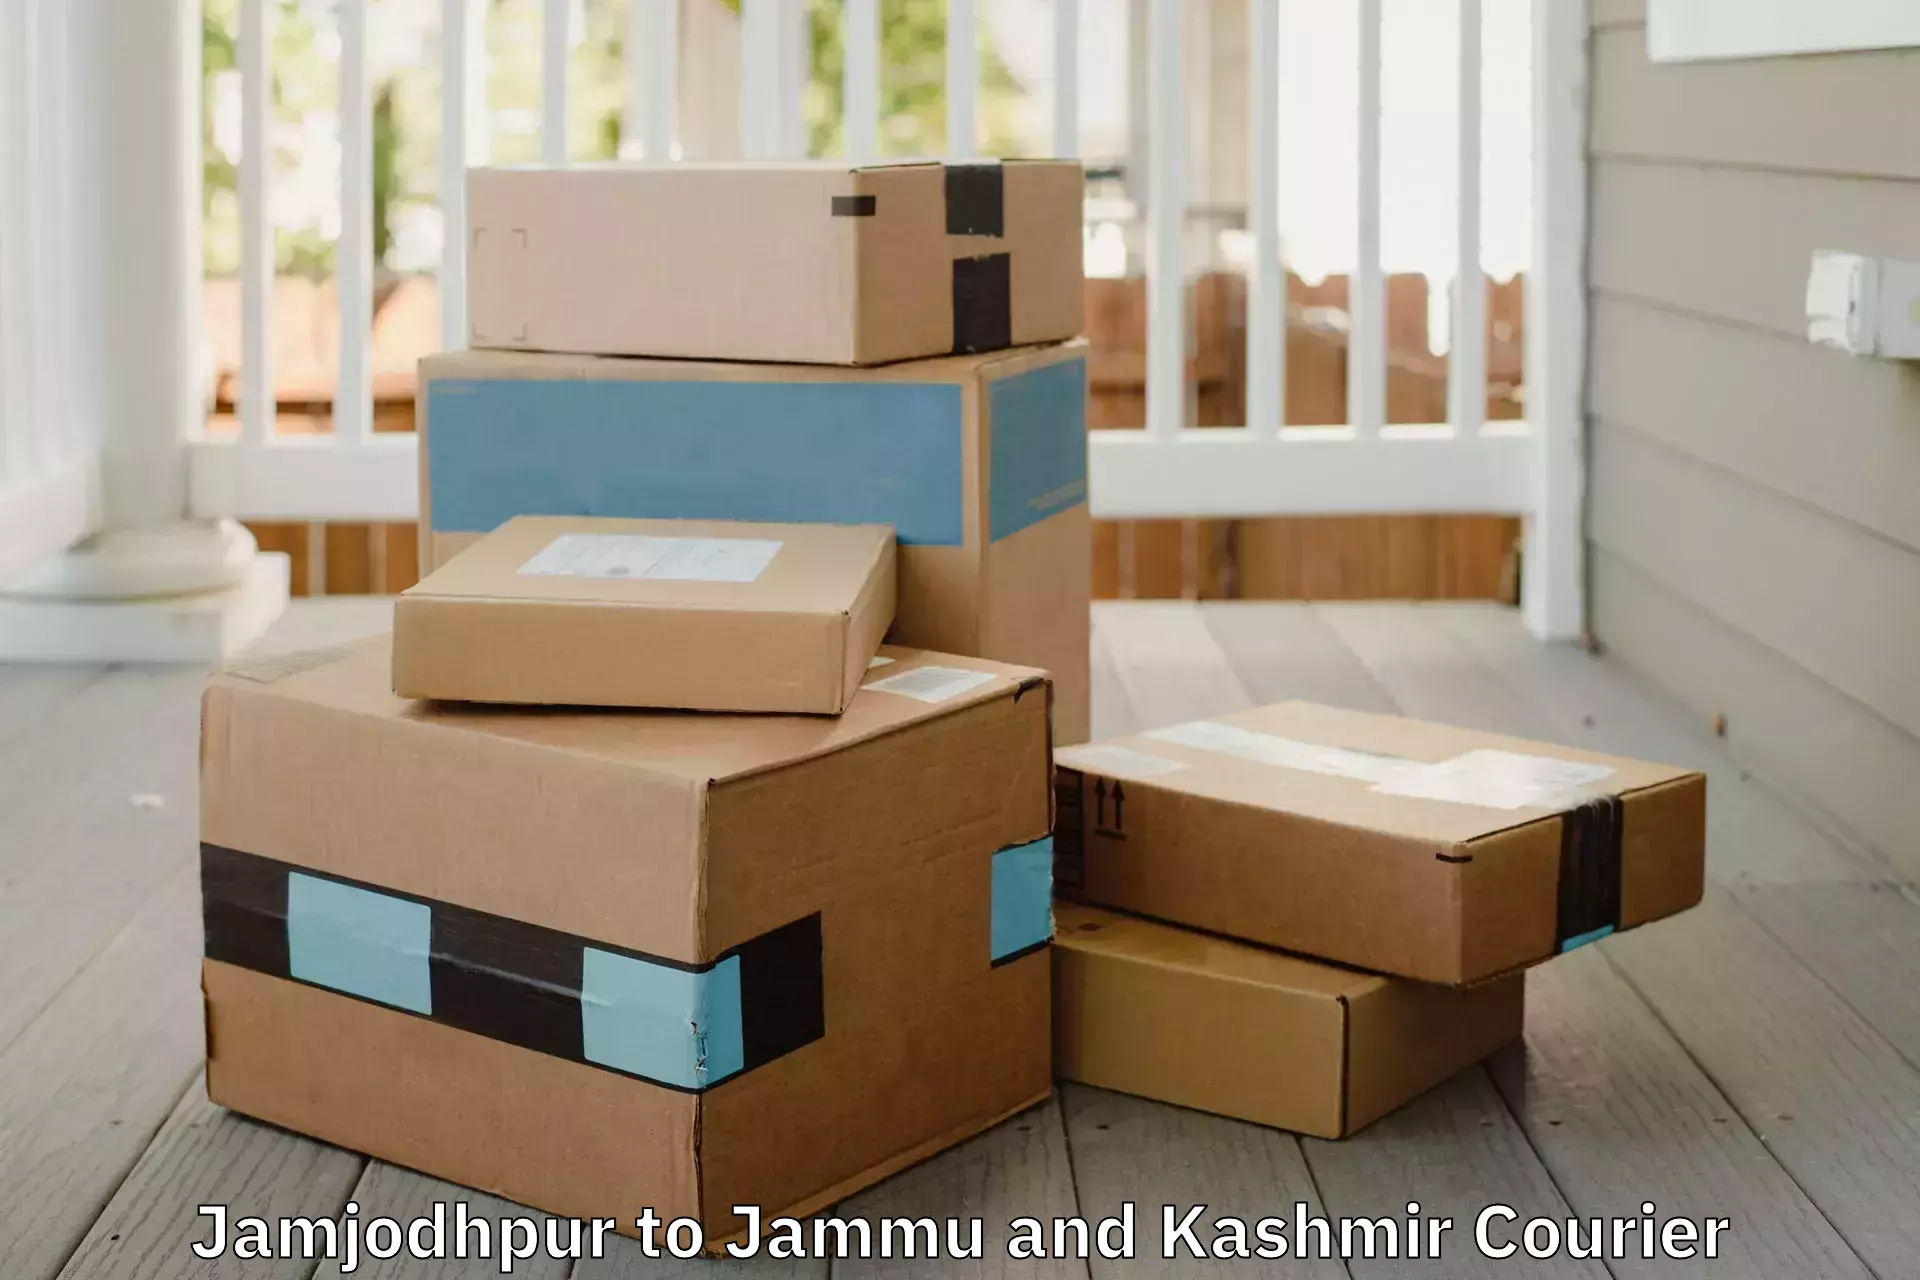 Home goods transportation Jamjodhpur to Udhampur